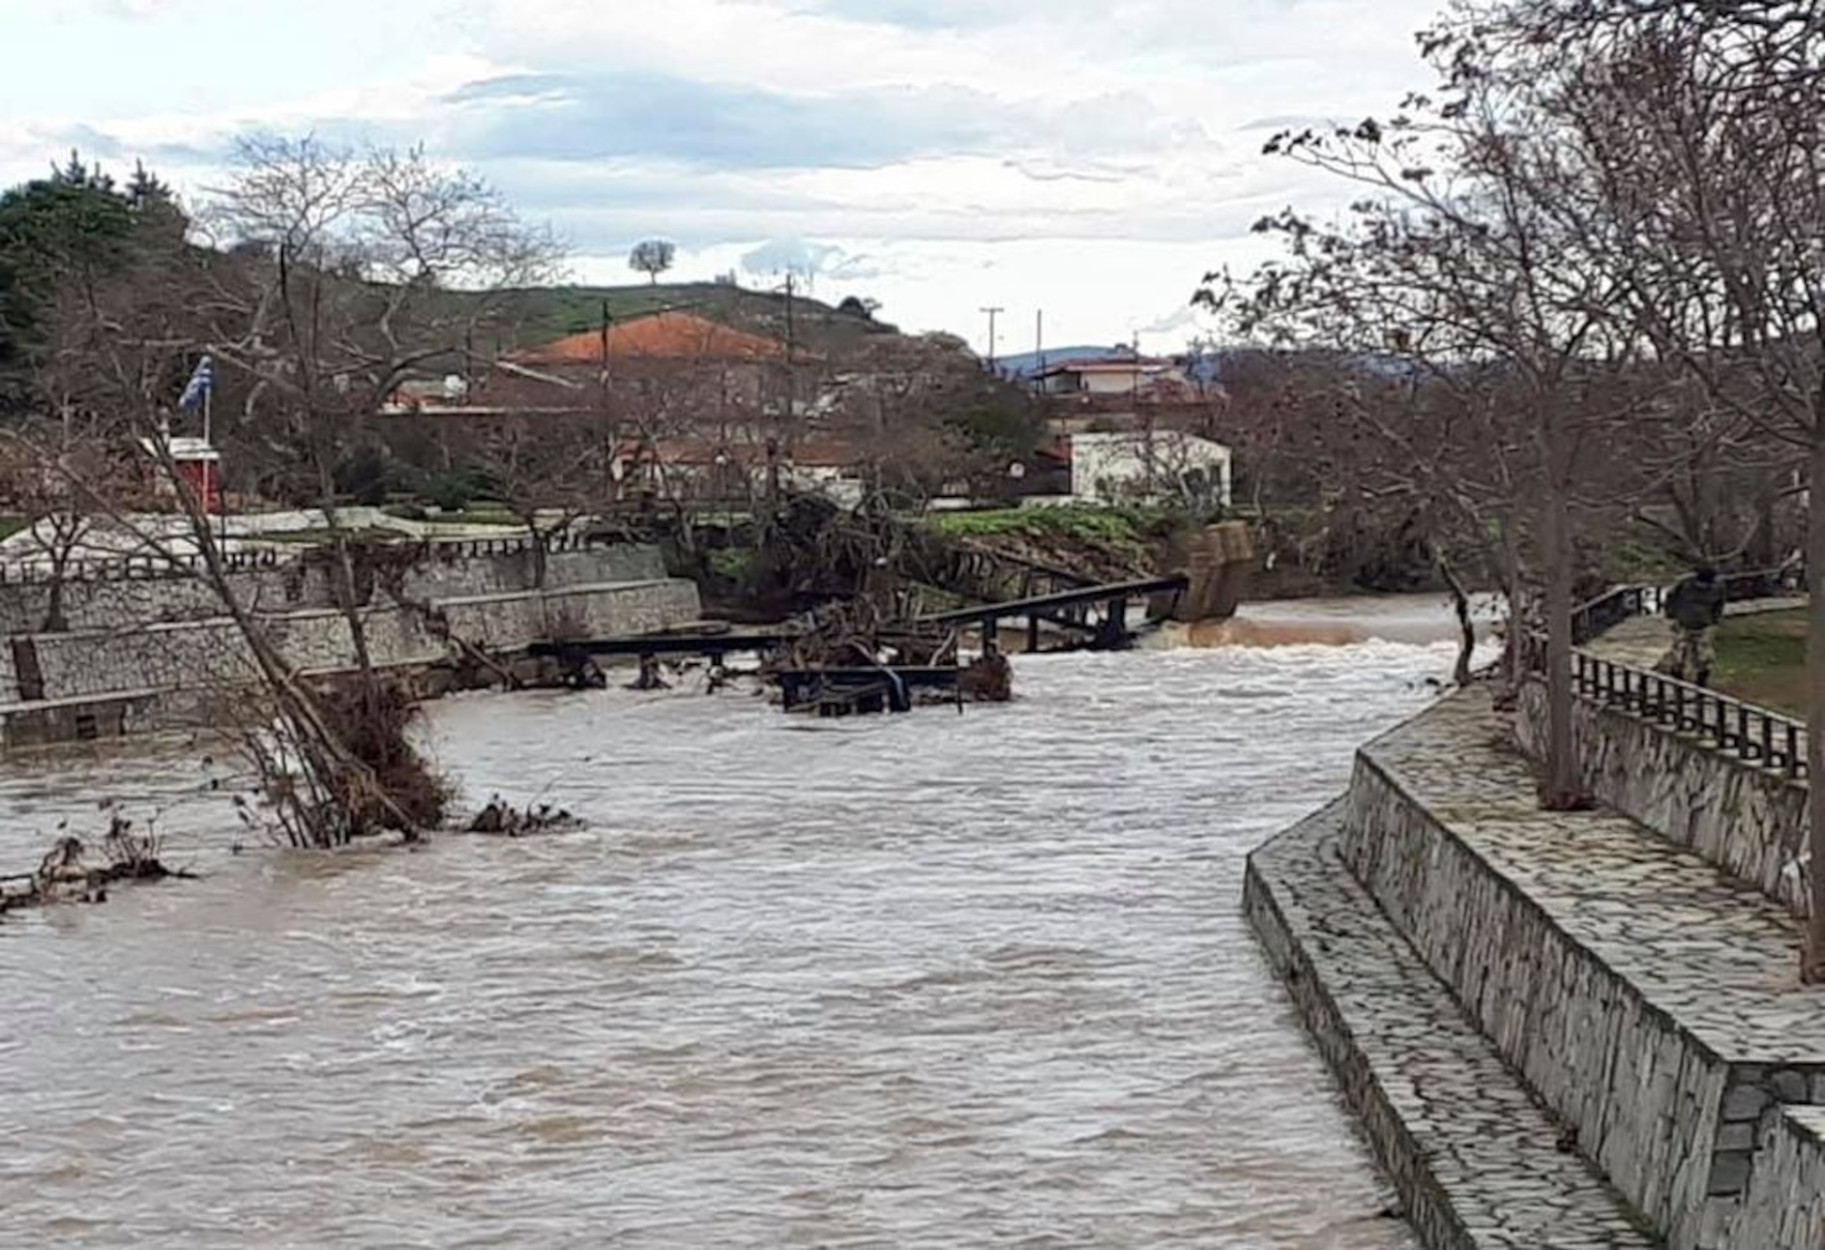 Έβρος: Ανέβηκε επικίνδυνα η στάθμη του ποταμού – Τα αναλυτικά στοιχεία που προκαλούν ανησυχία (pics)